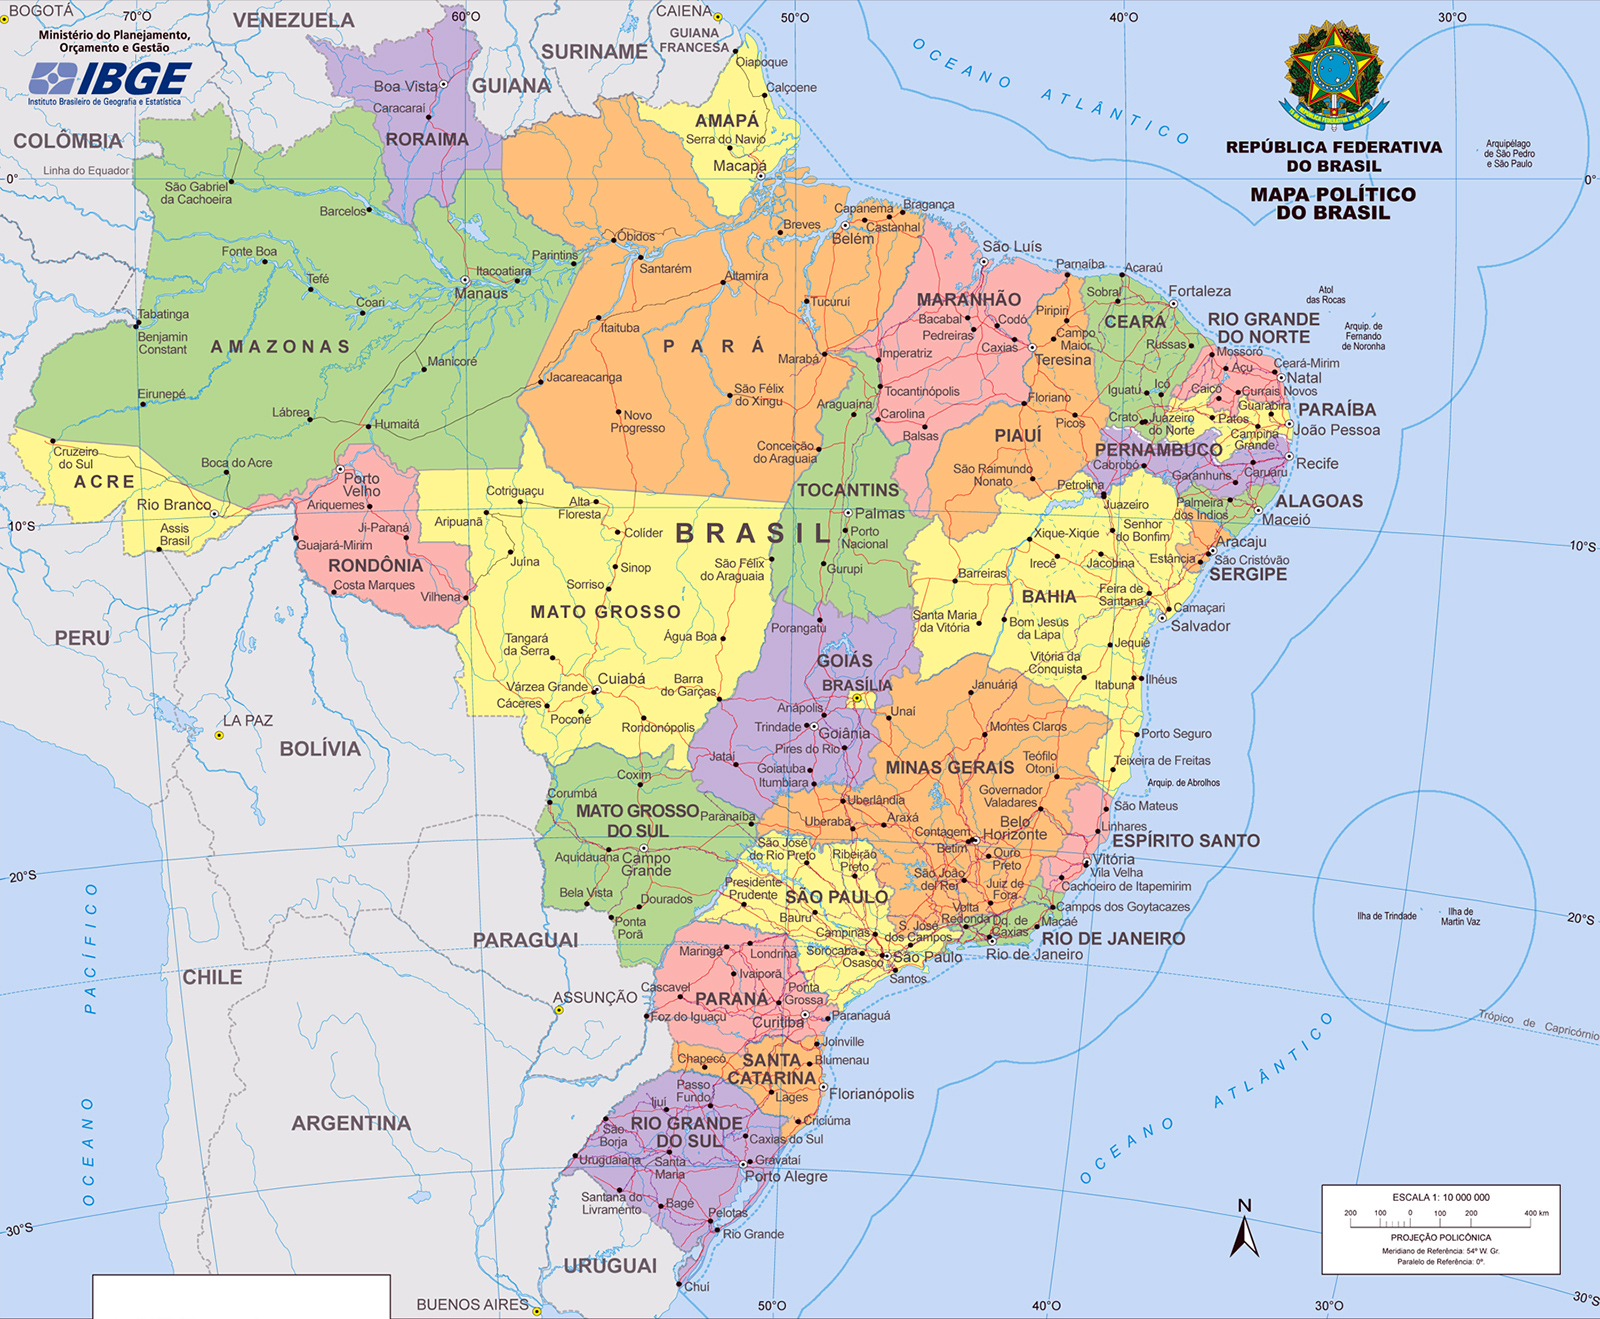 Mapa politico do Brasil